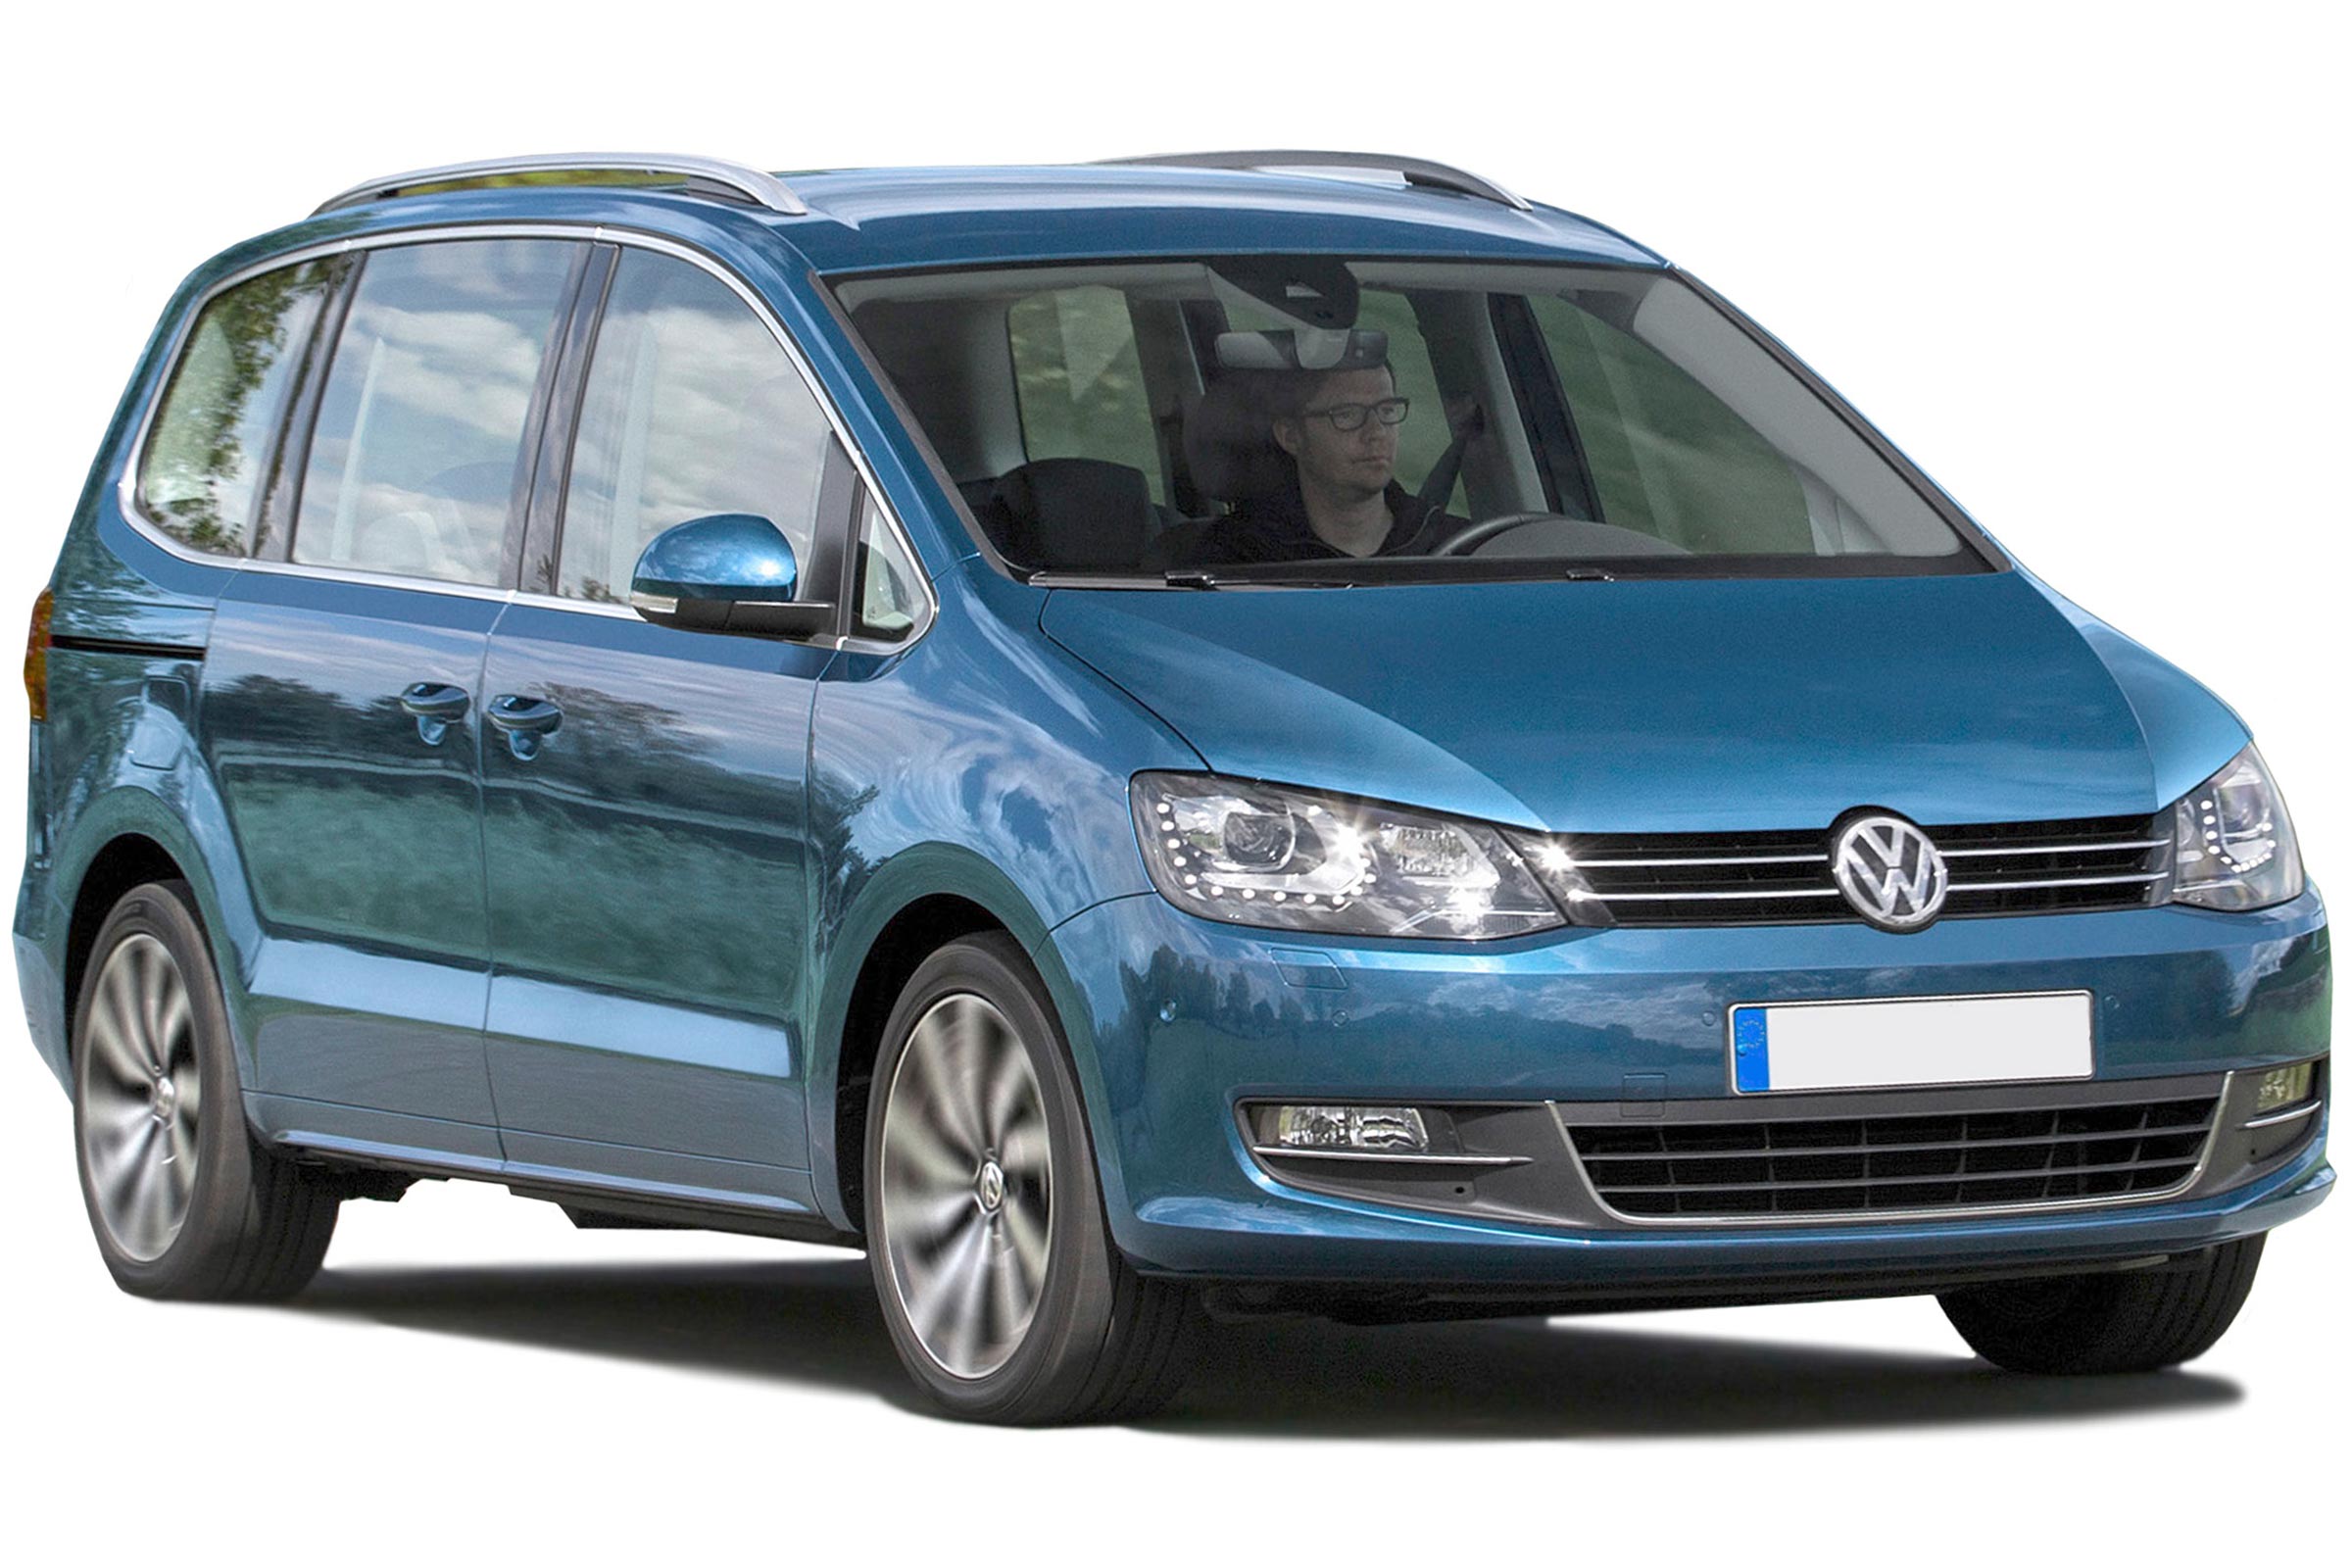 Volkswagen Sharan MPV (2010-2022) - MPG, running costs & CO2